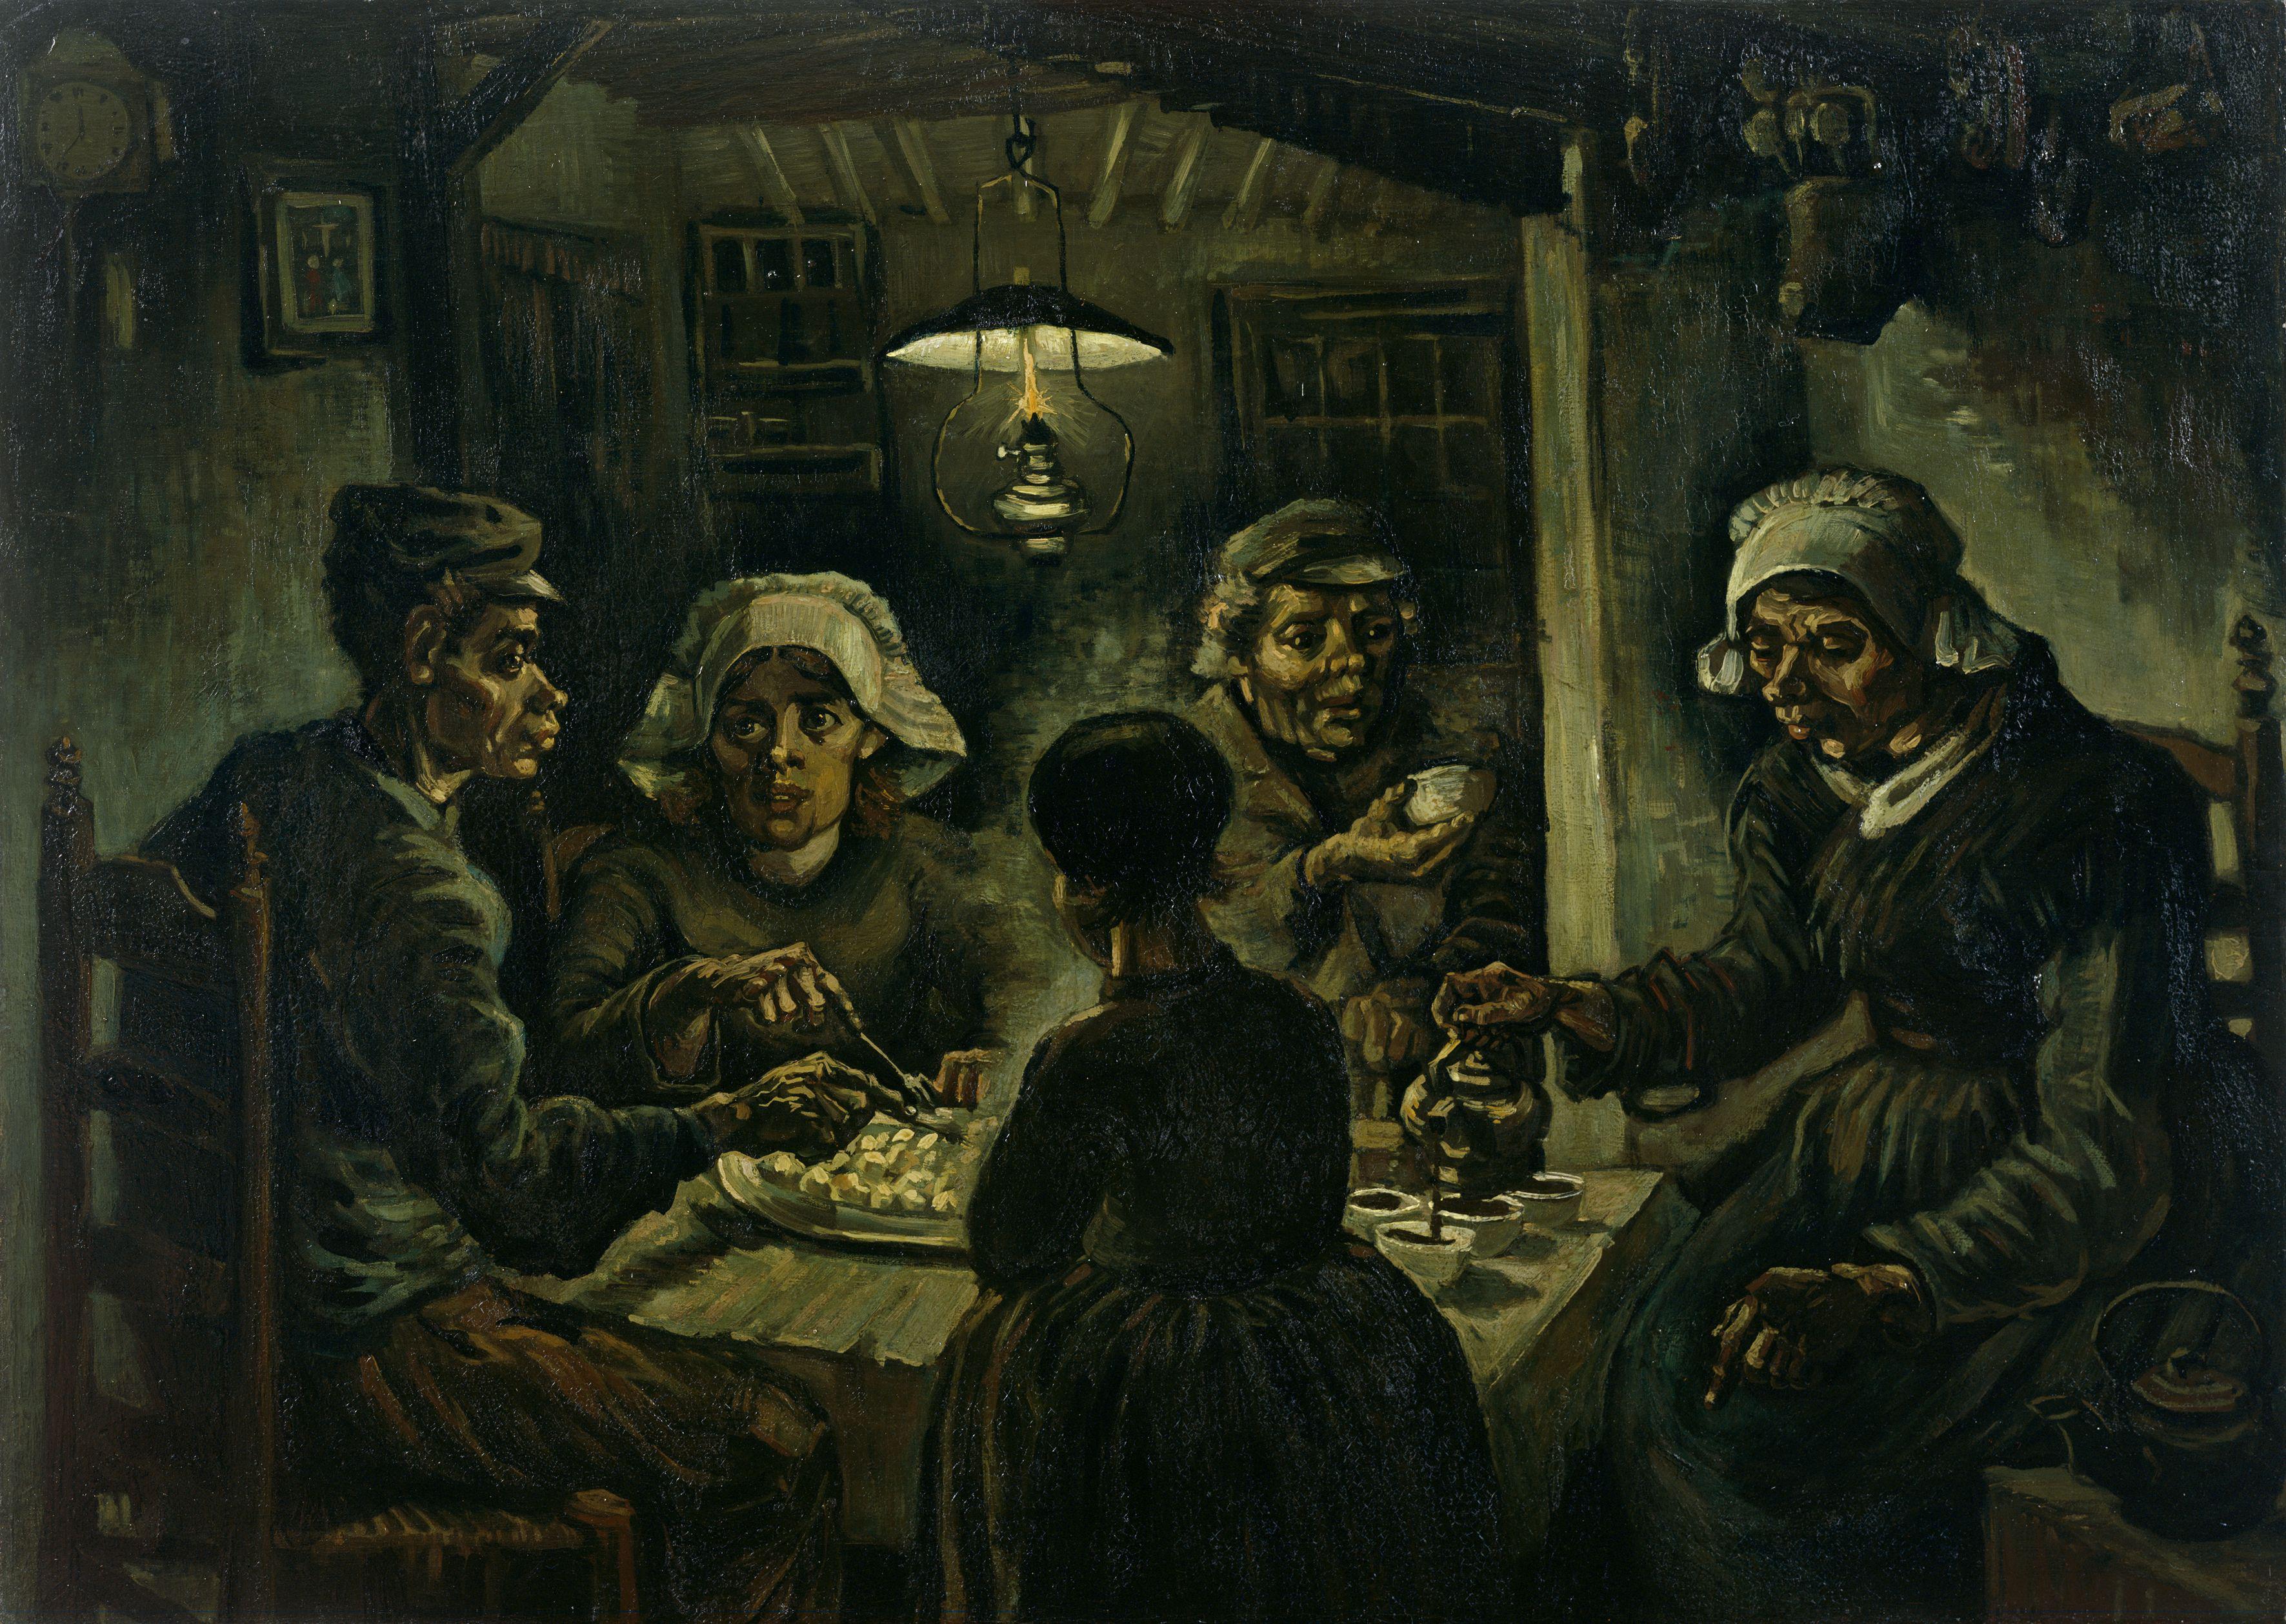 De aardappeleters: het schilderij De Aardappeleters. Een boerenfamilie van vijf zit rondom een eettafel en eet aardappelen en drinkt koffie.